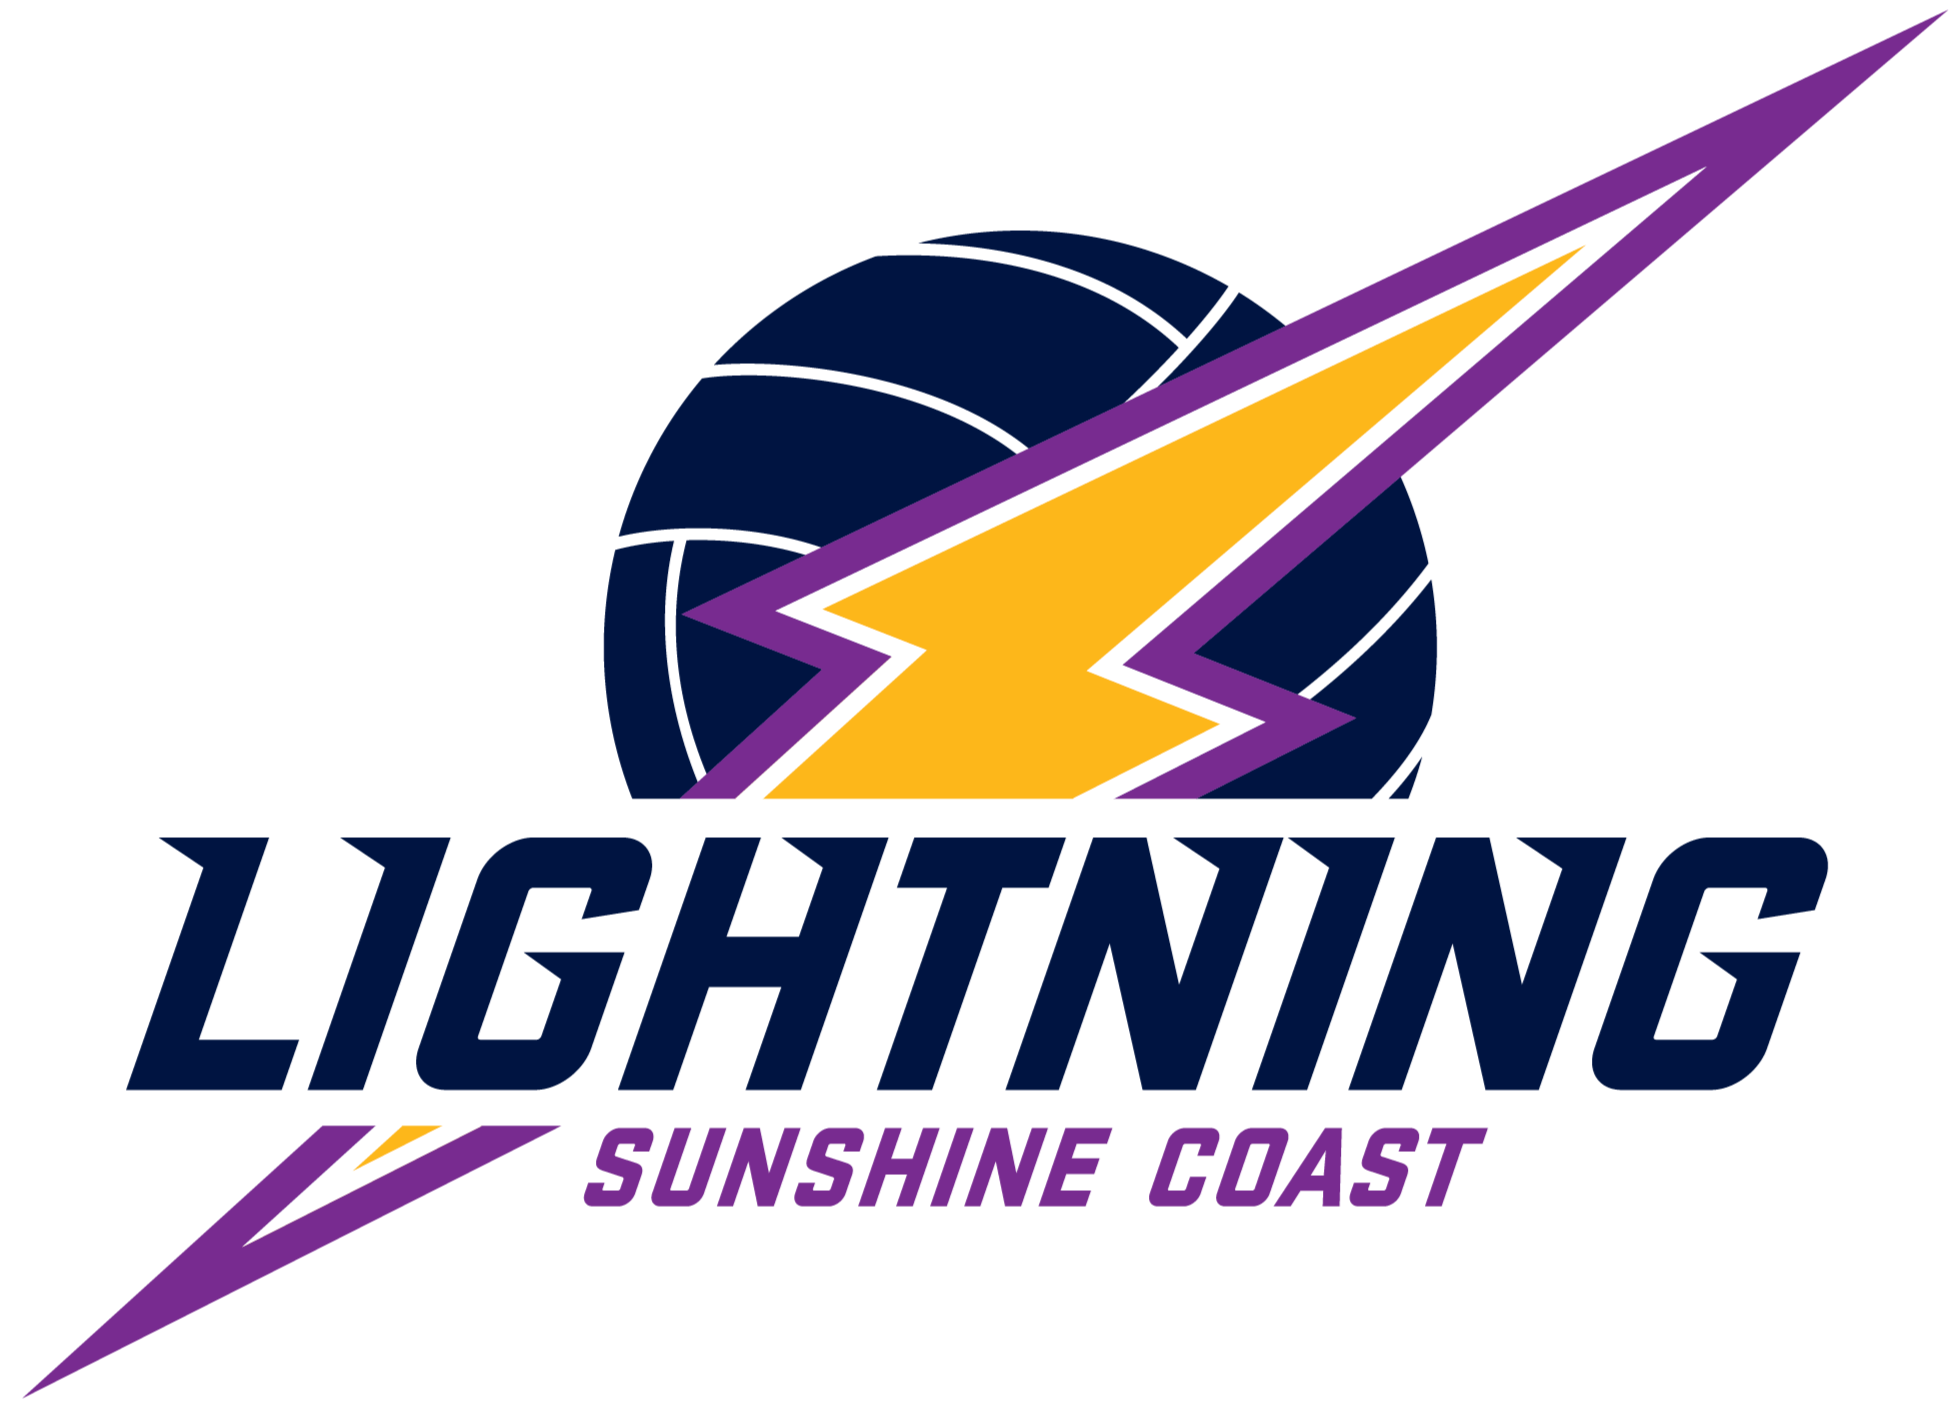 Lightning Sunshine Coast